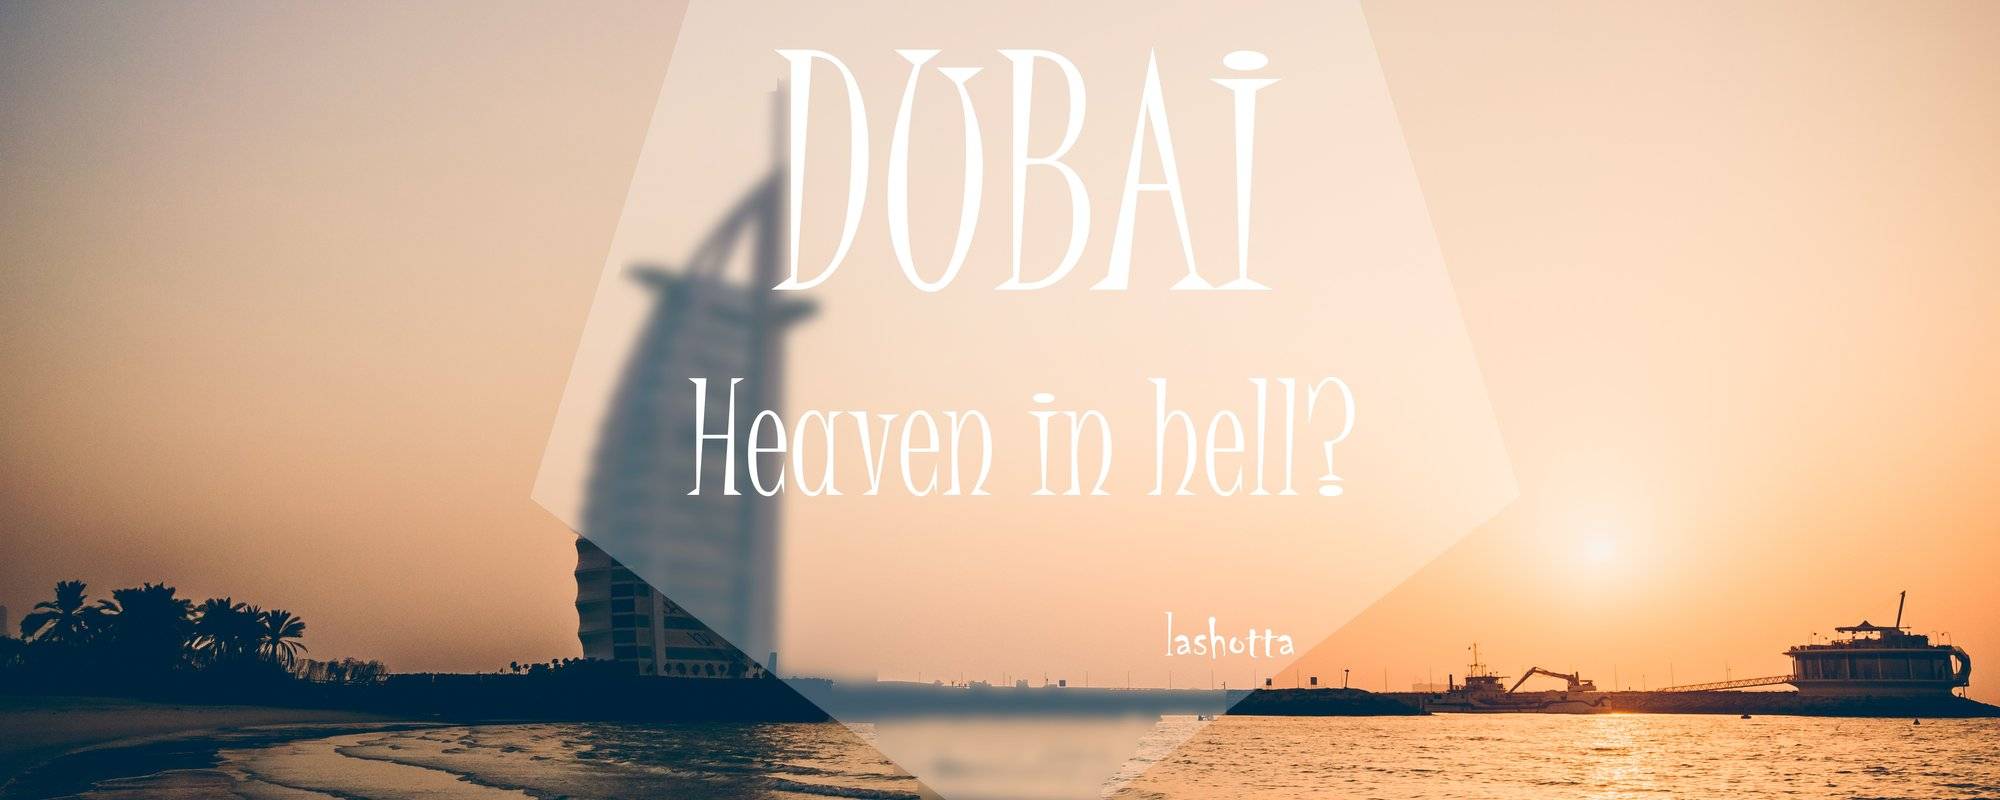 DUBAI - Heaven in hell?